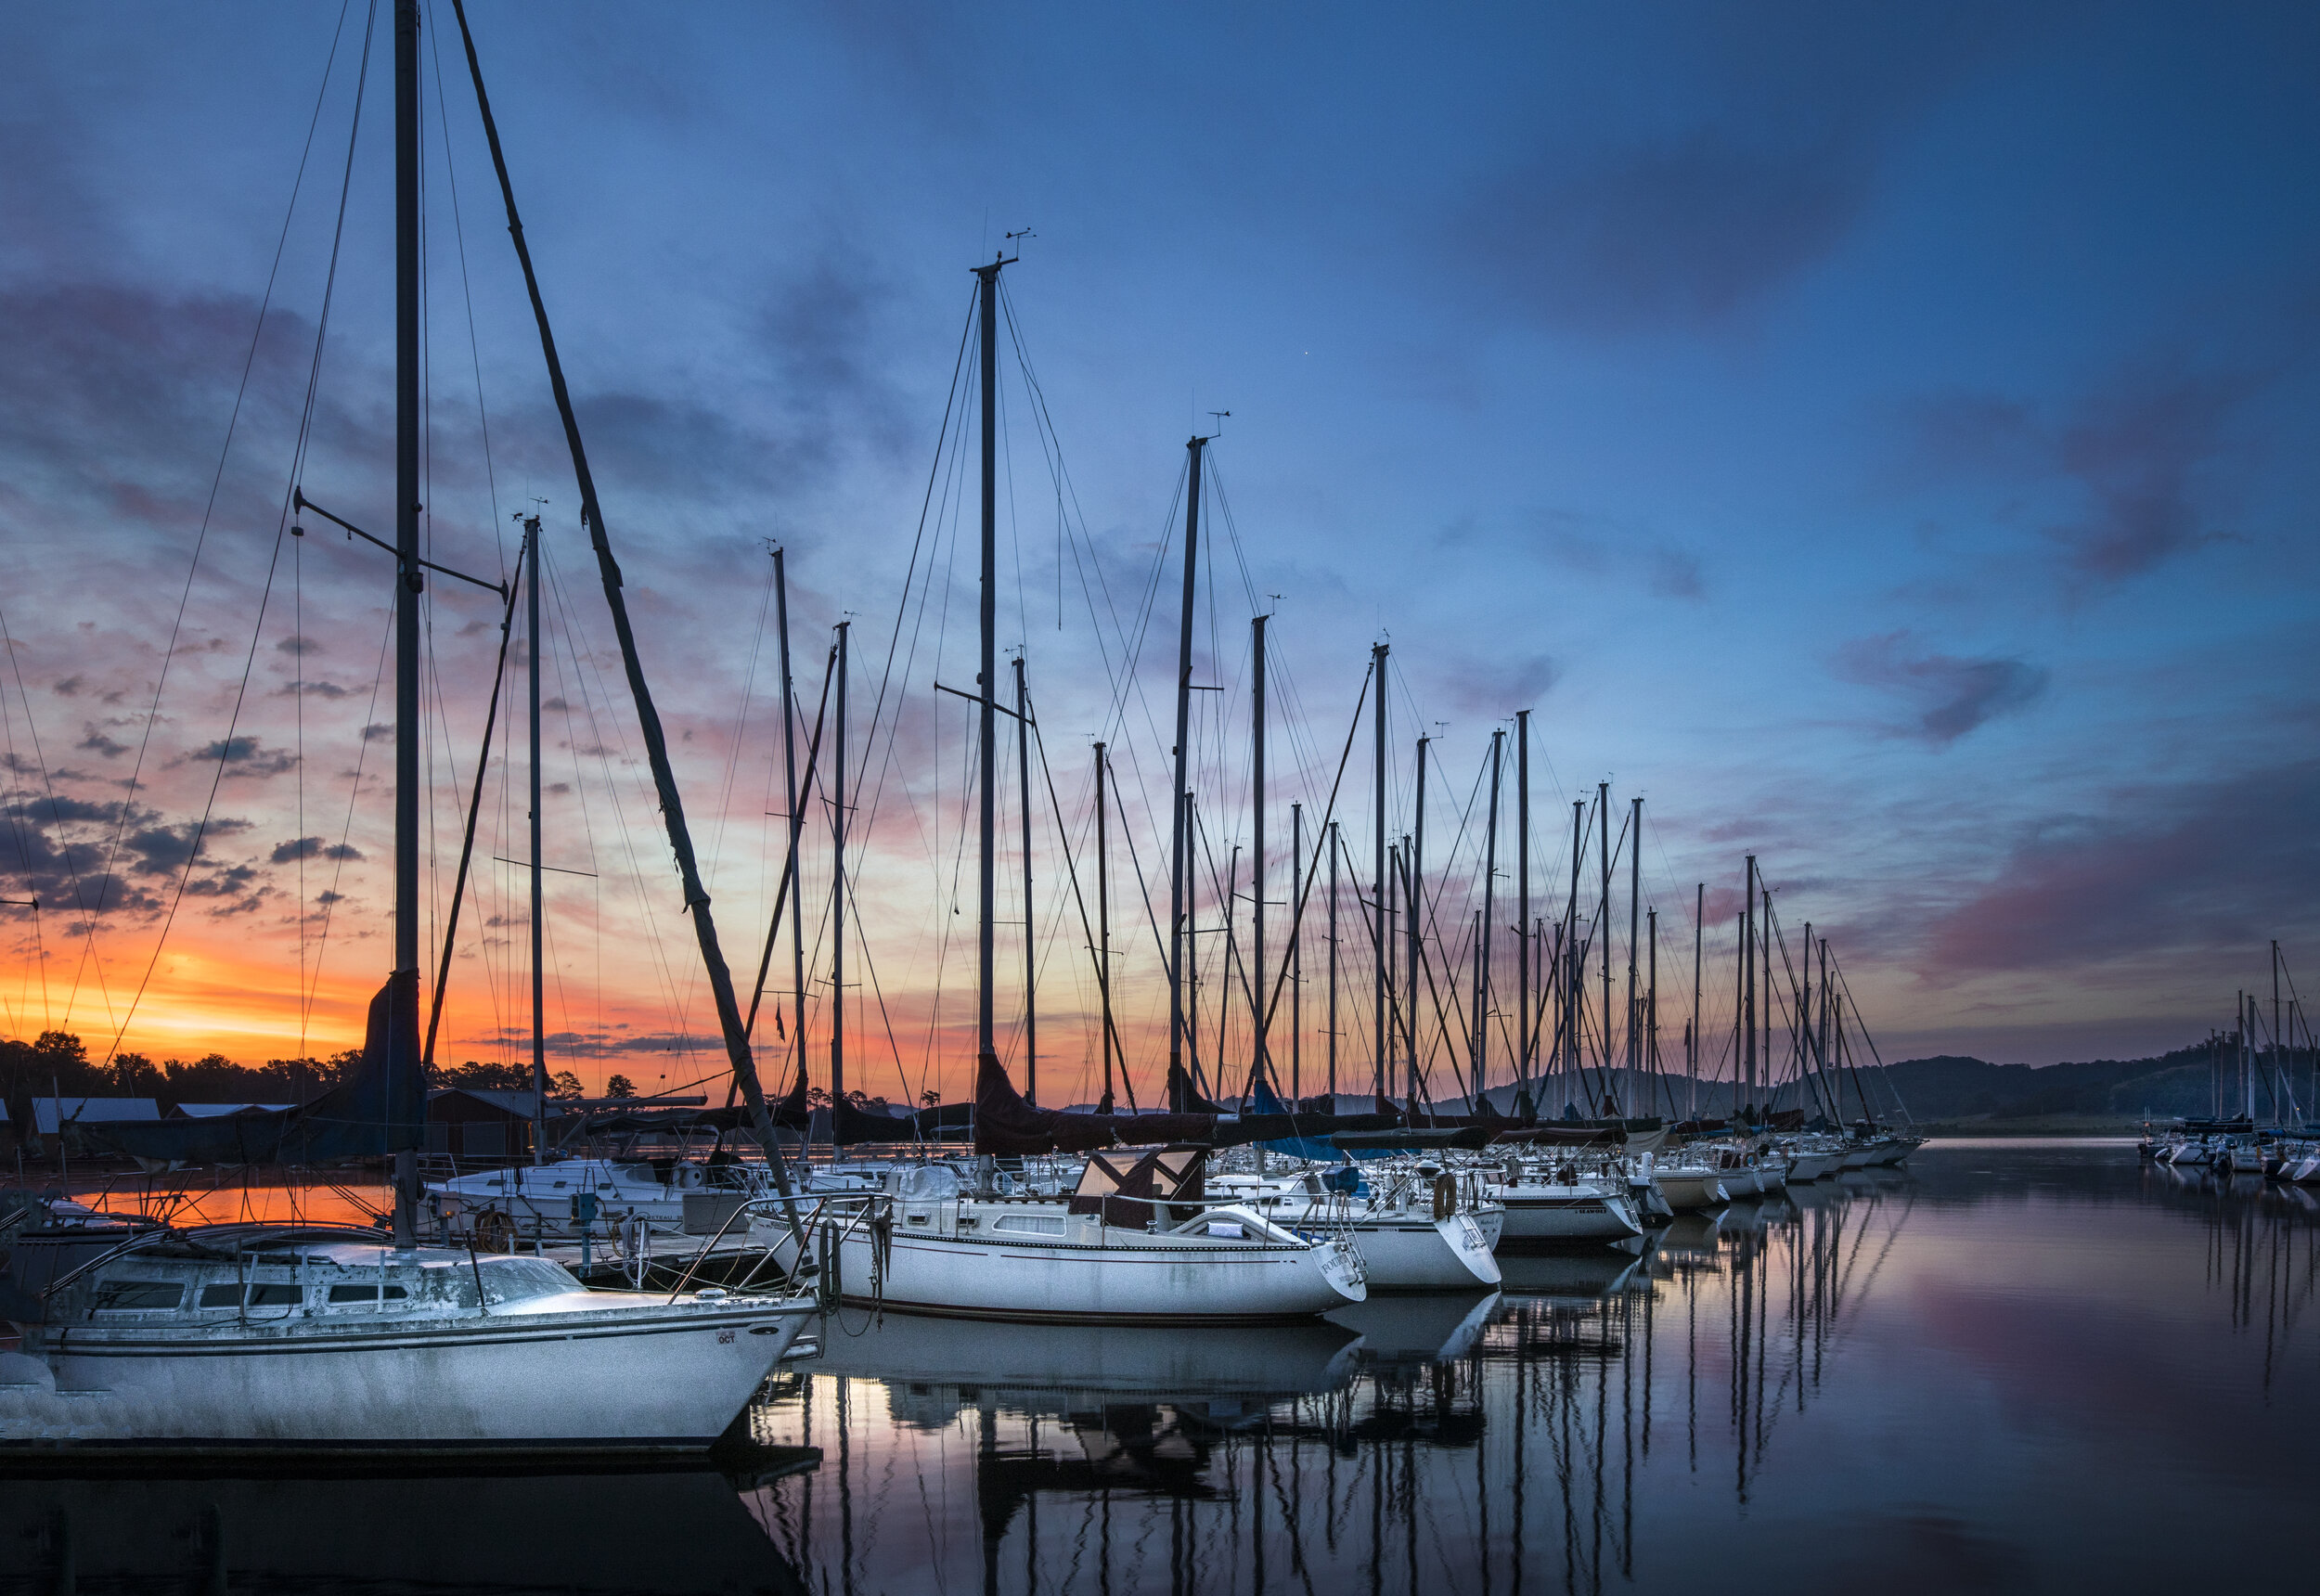 sailboats at sunset by john sharp 2020.jpg